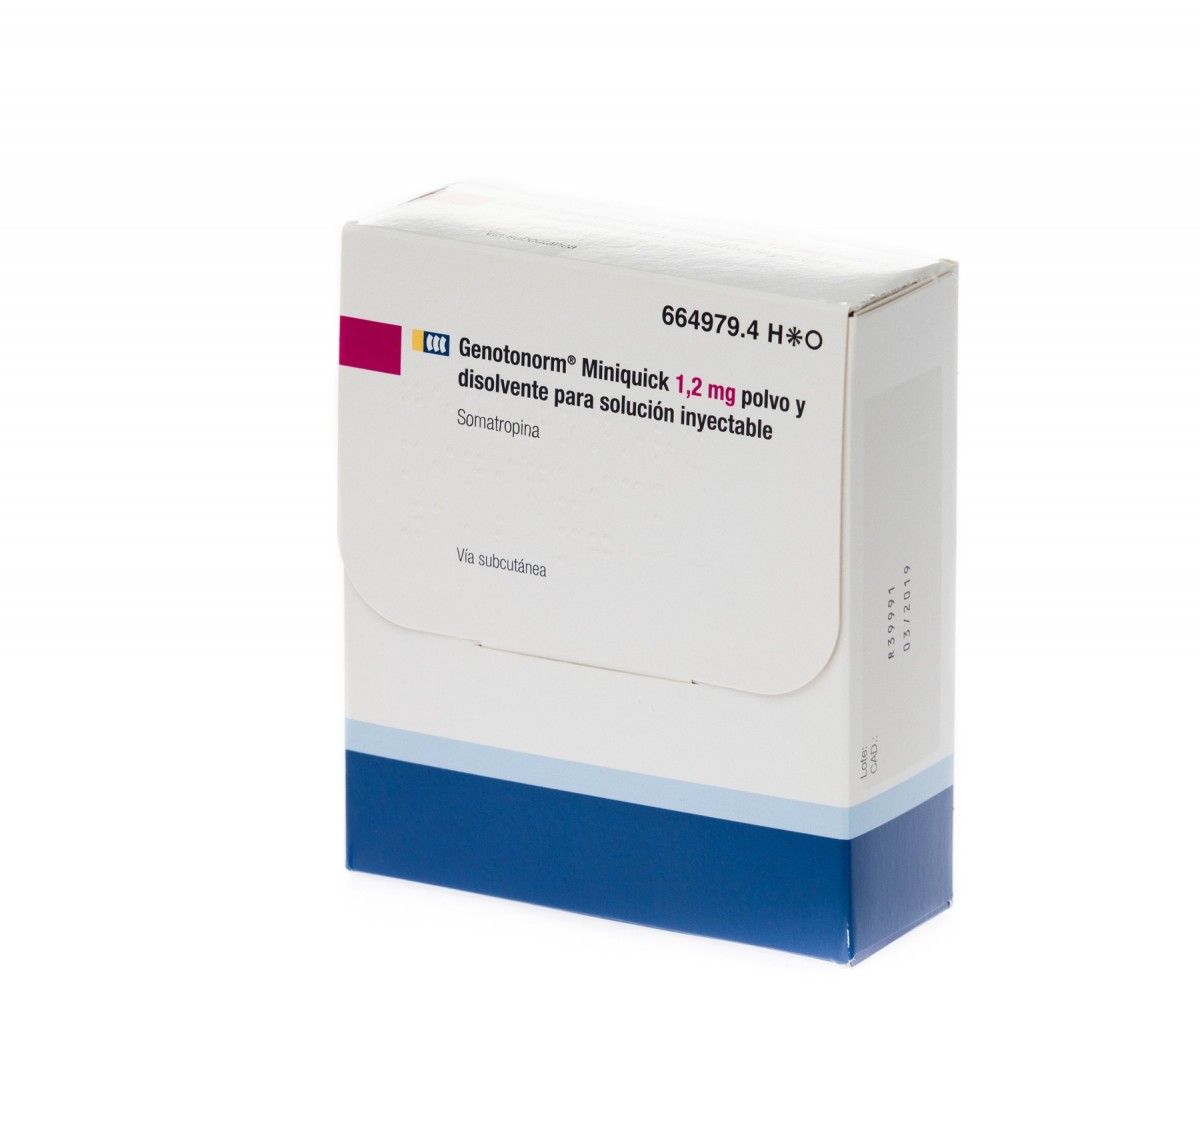 GENOTONORM MINIQUICK 1,2 mg POLVO Y DISOLVENTE PARA SOLUCION INYECTABLE 7 viales de doble cámara fotografía del envase.